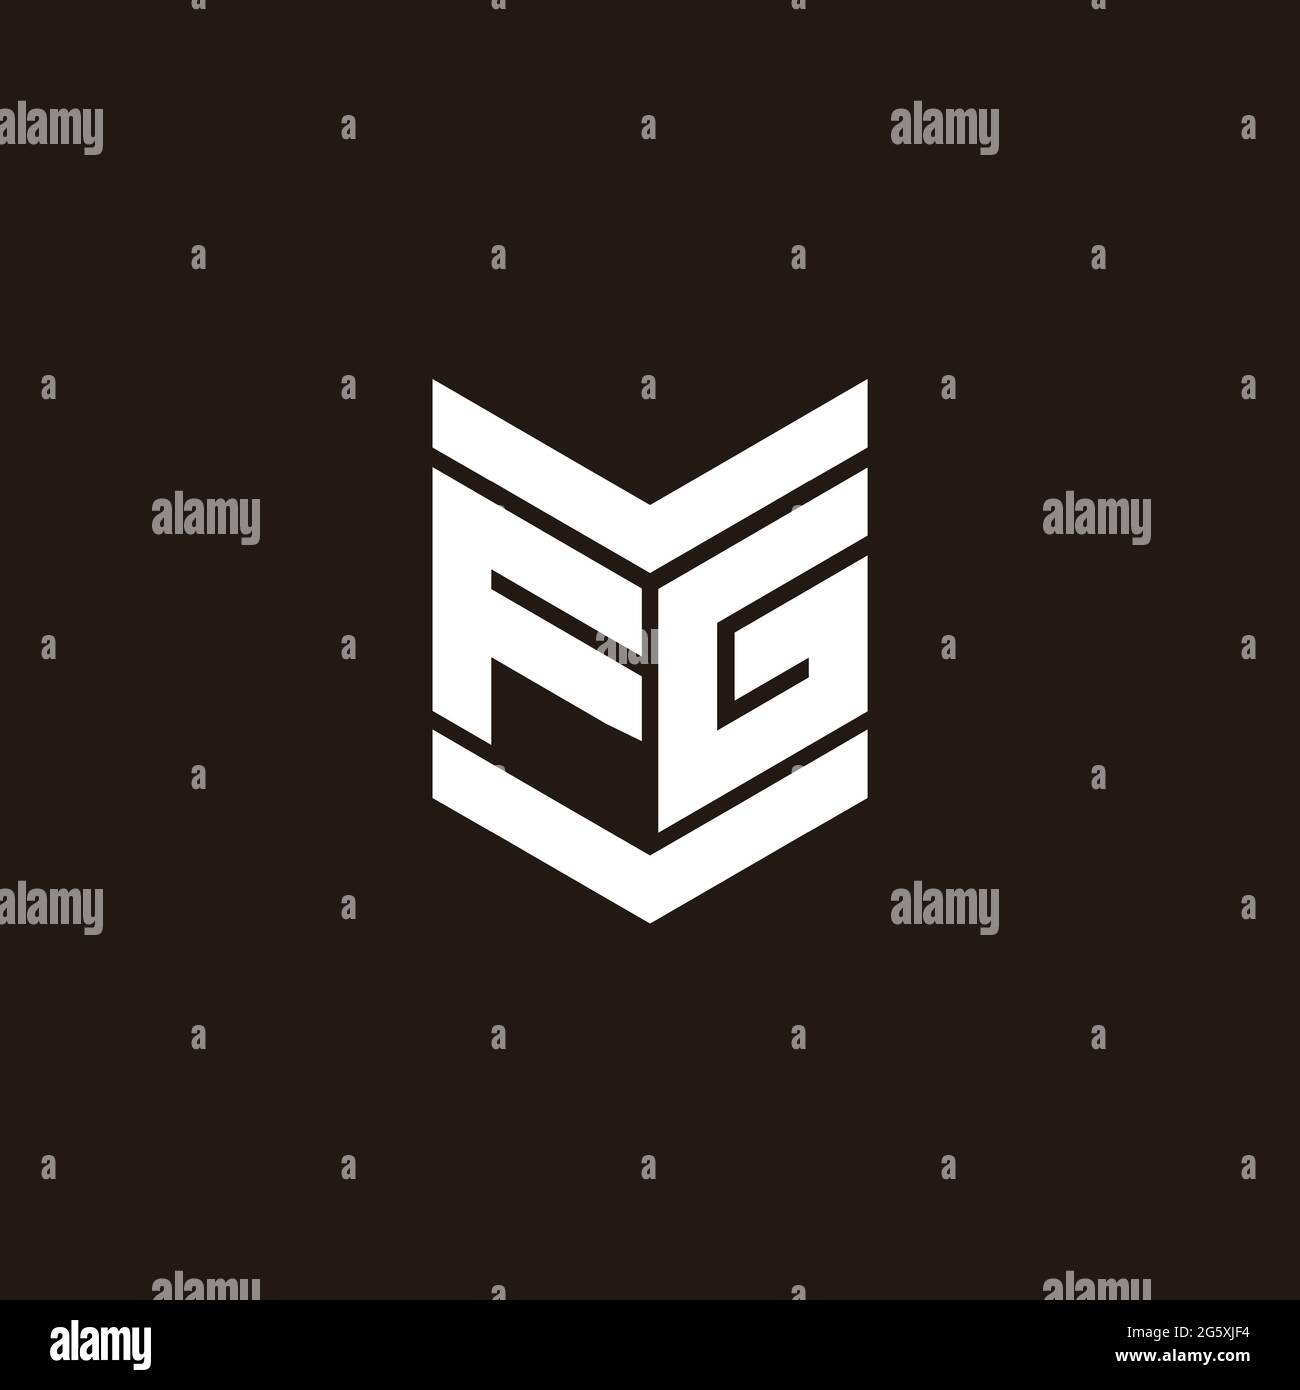 Logo alphabet monogram with emblem style isolated on black background Stock Vector